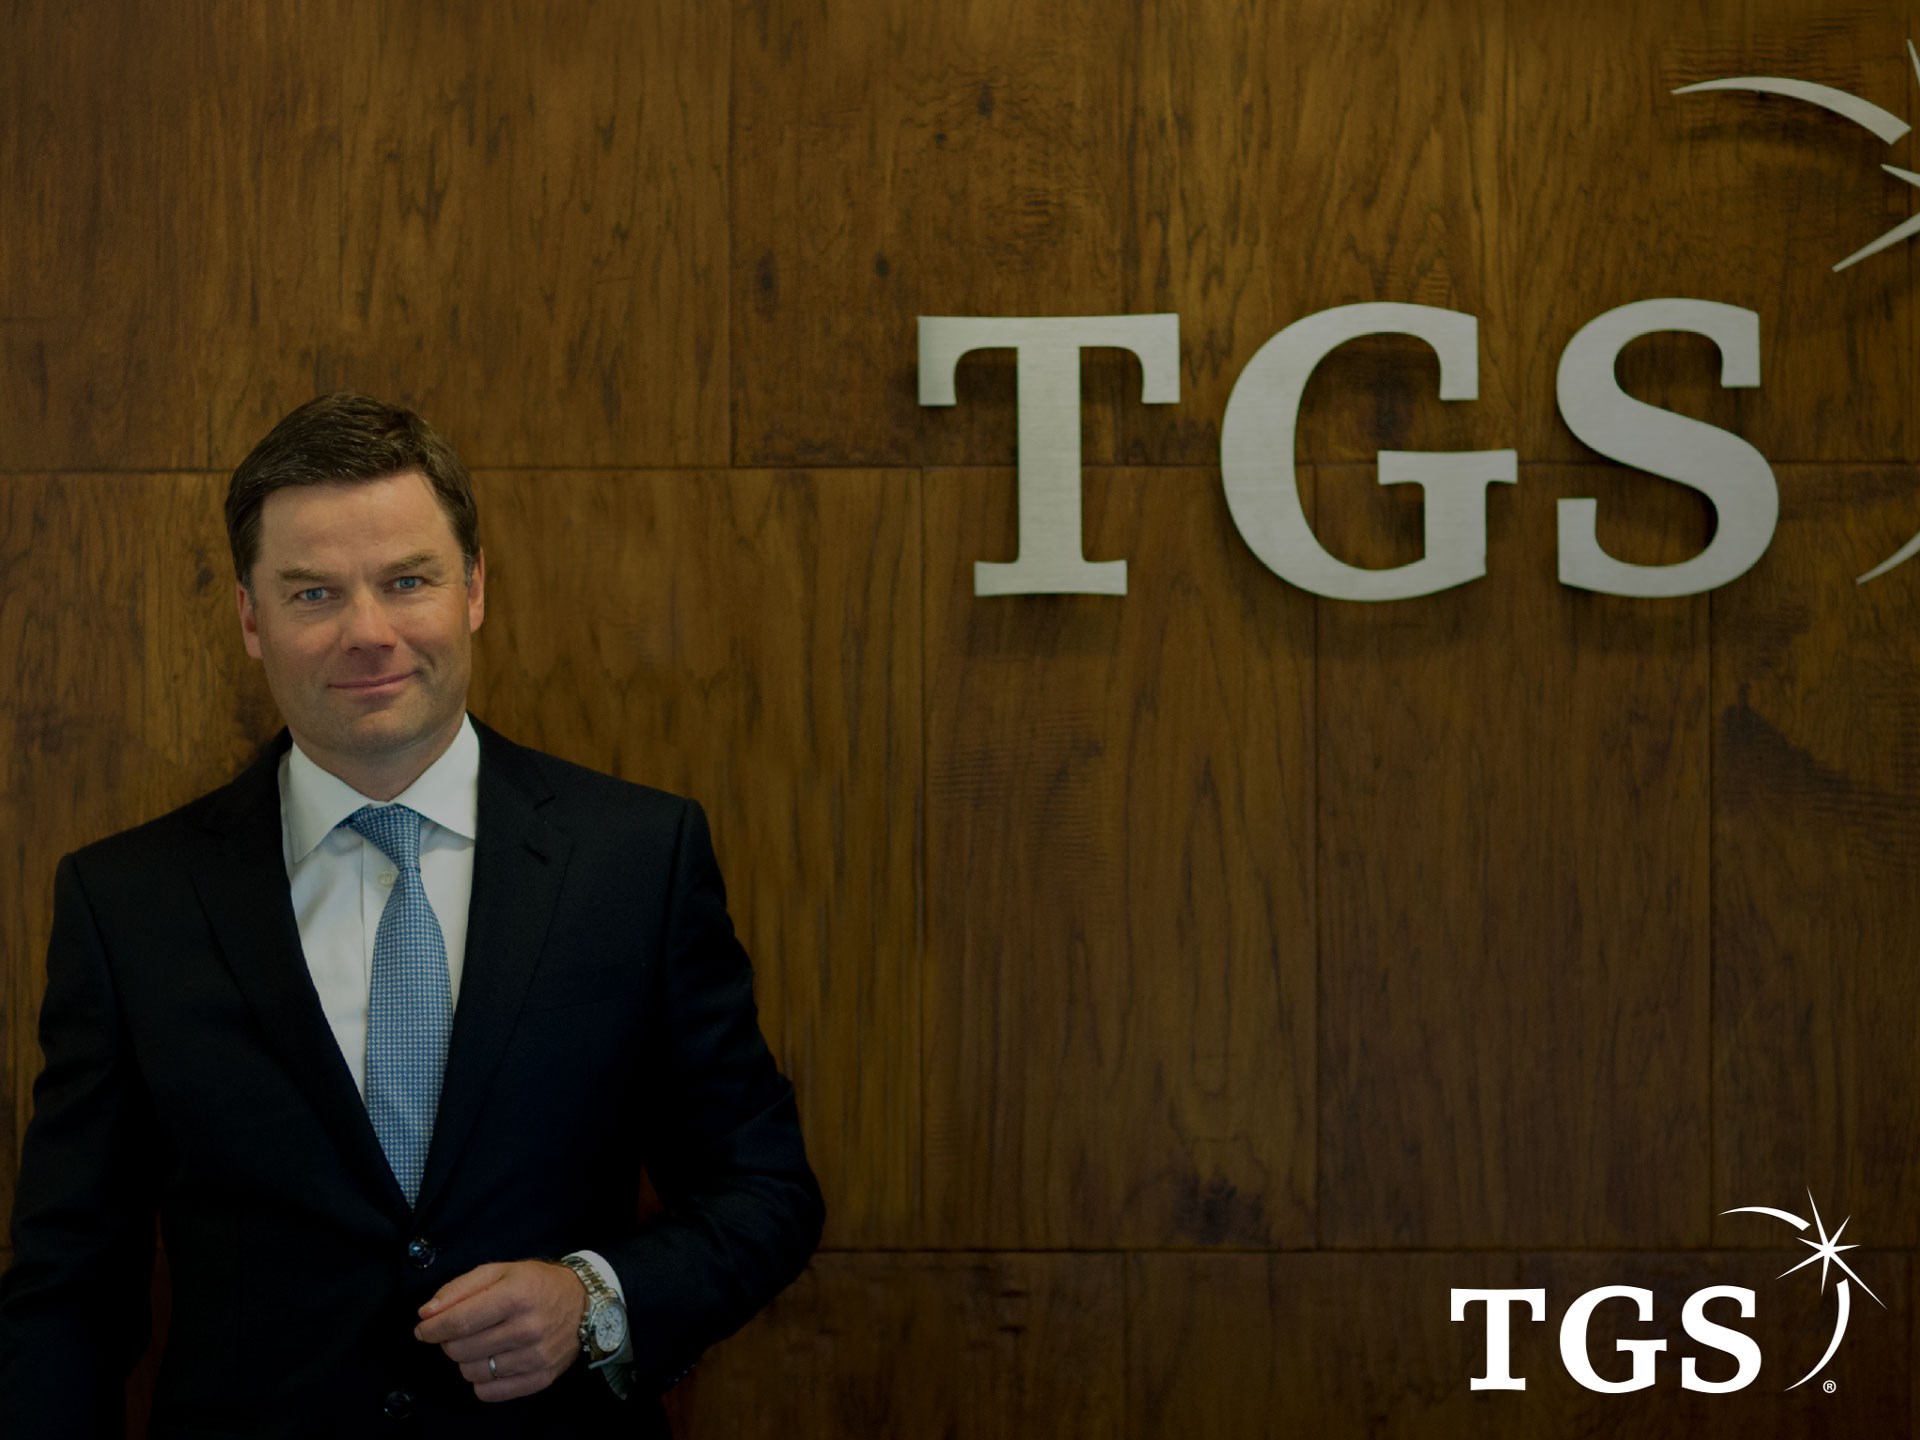 TGS CEO Kristian Johansen